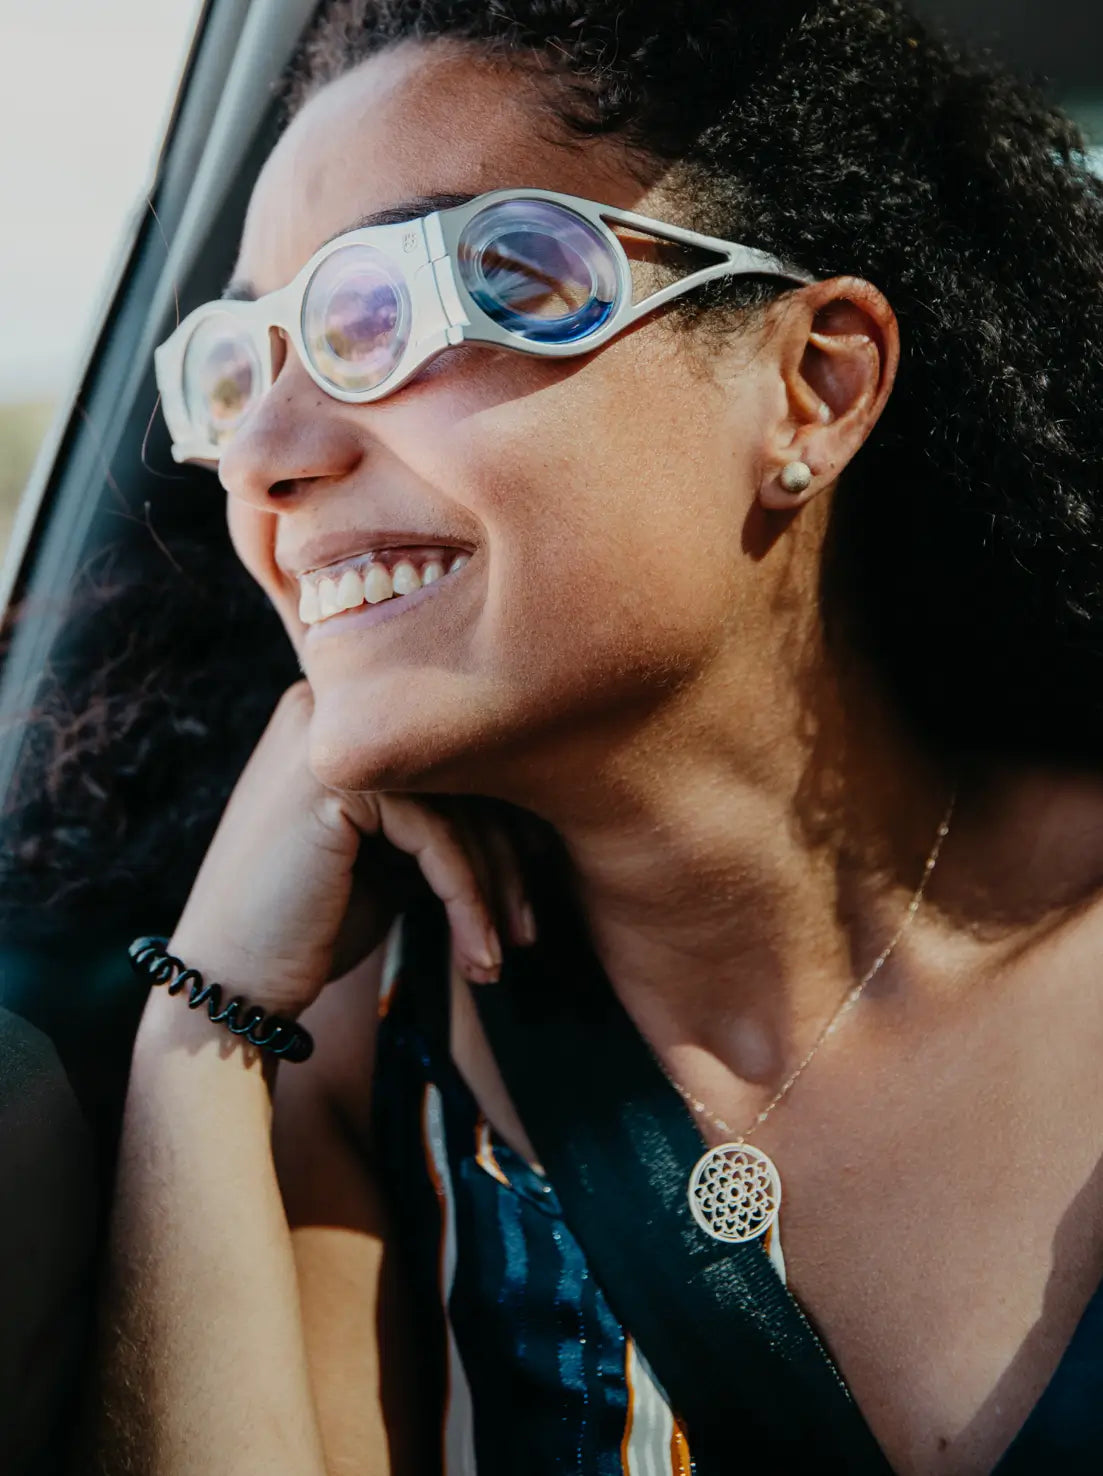 femme métisse en gros plan dans une voiture qui sourit avec des lunettes contre le mal des transports